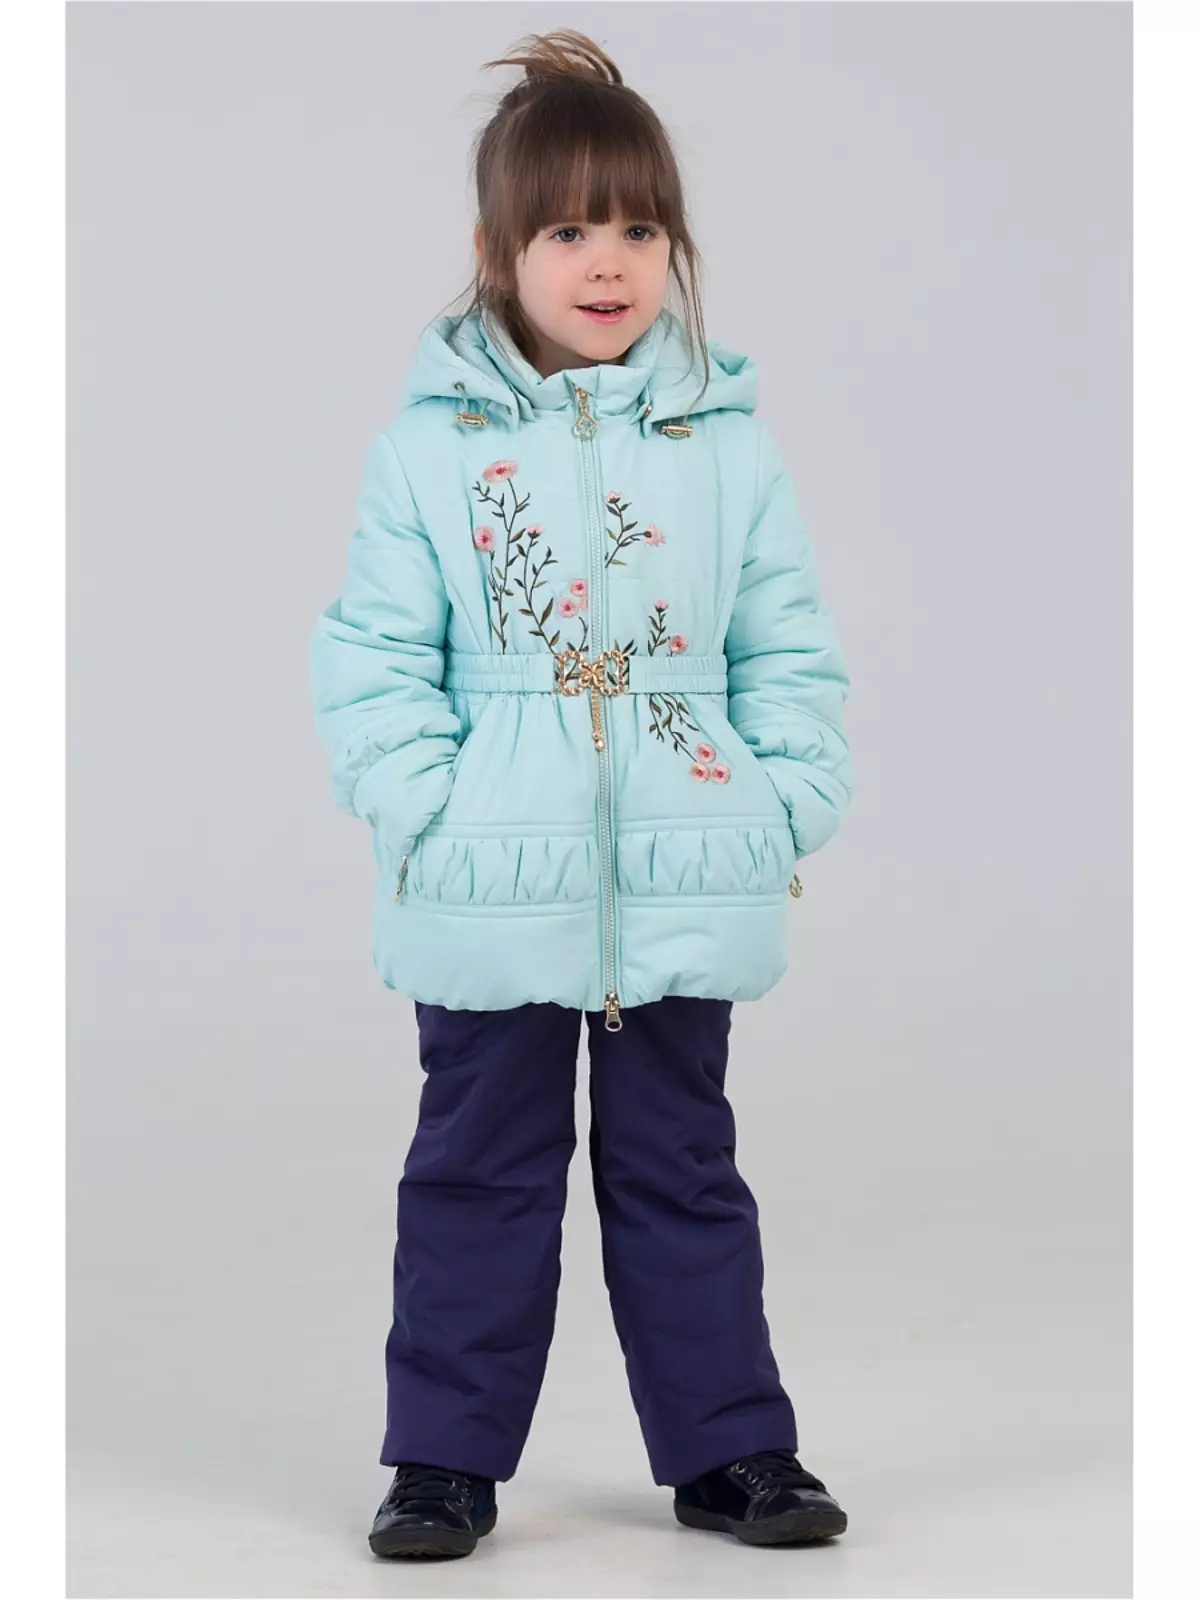 Bilemi (38 slike): Dječja odjeća, zimske komplete i kombinezoni, kabanica i jakne, brend recenzije 3802_18